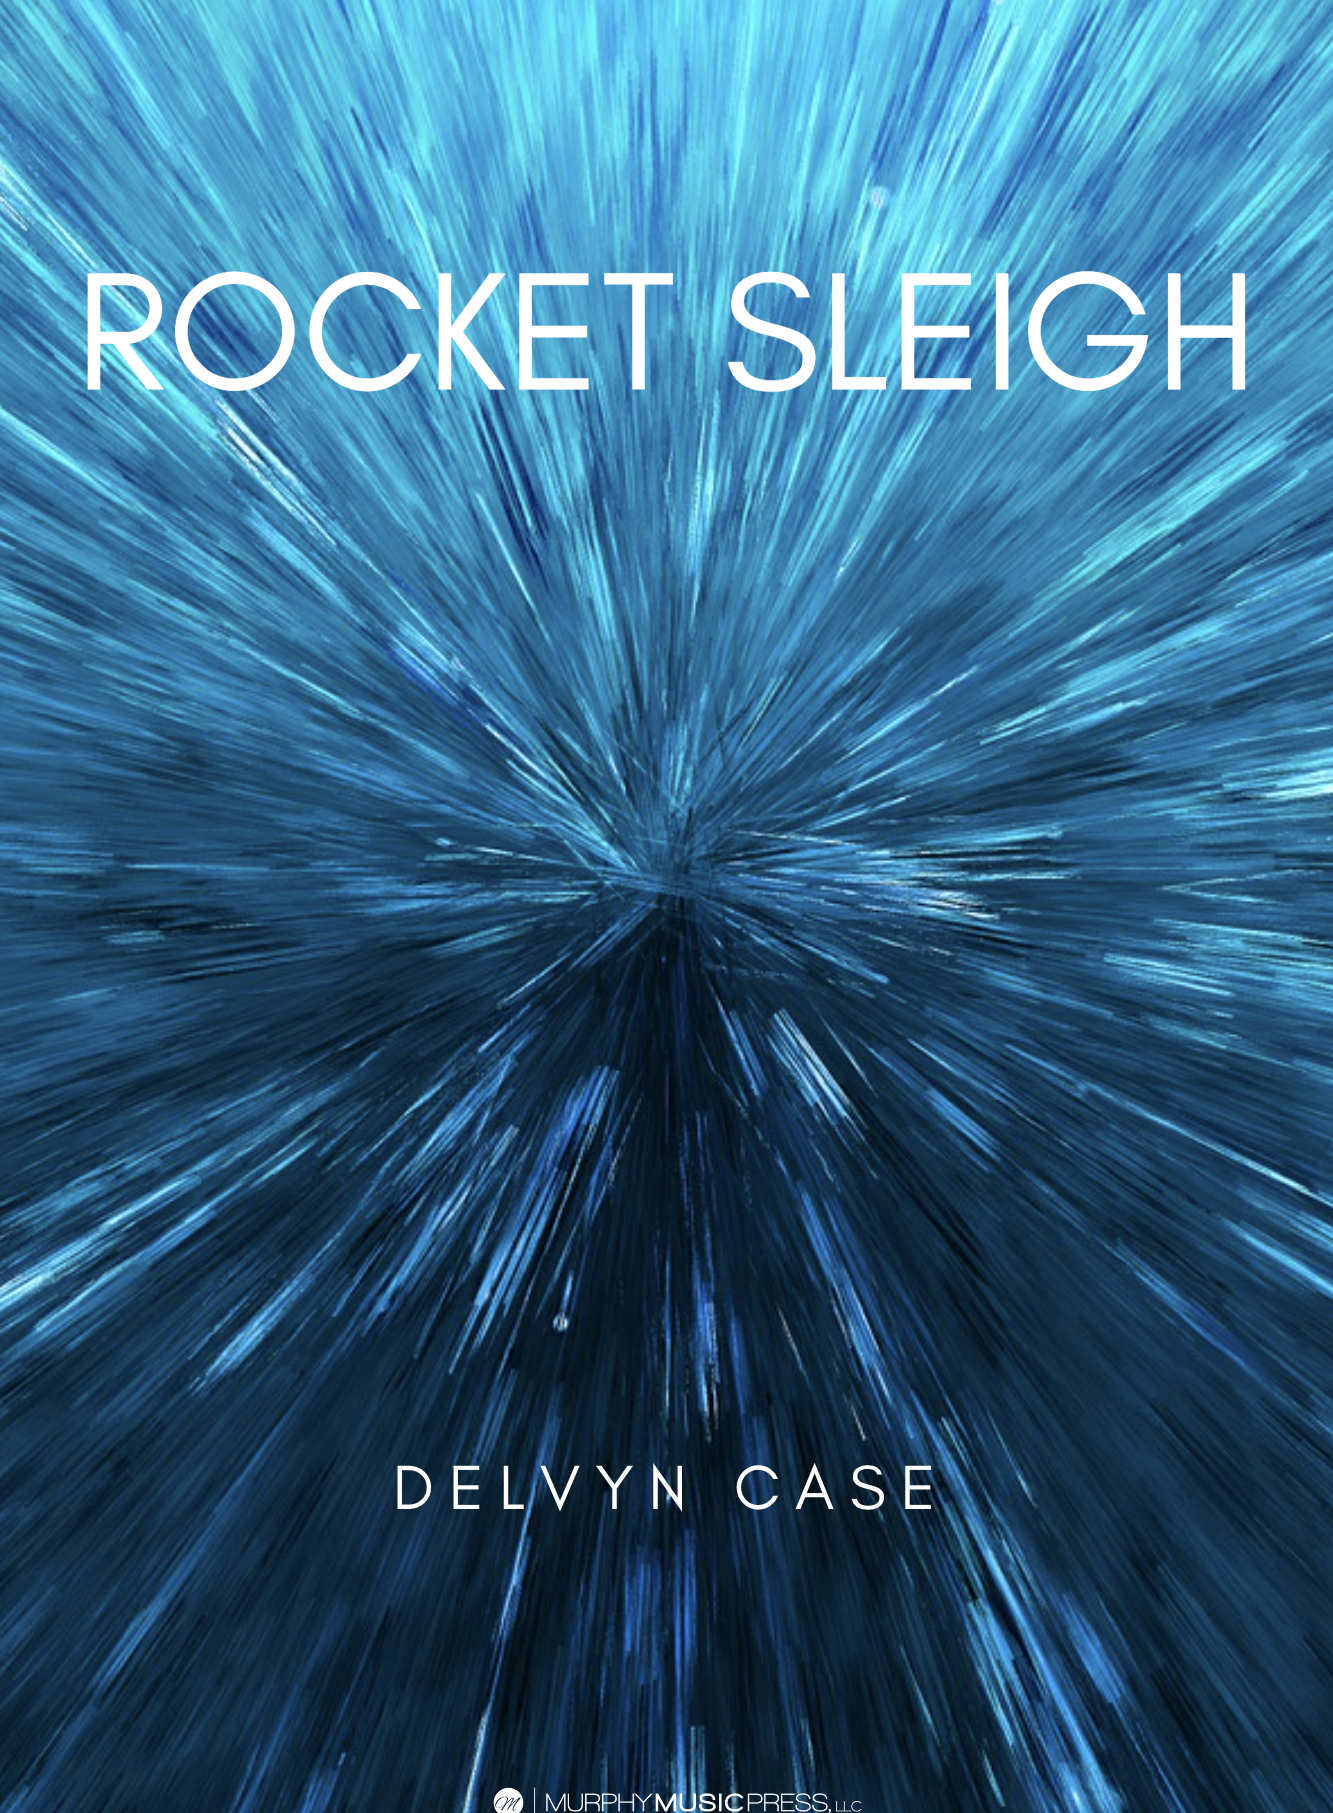 Rocket Sleigh by Delvyn Case